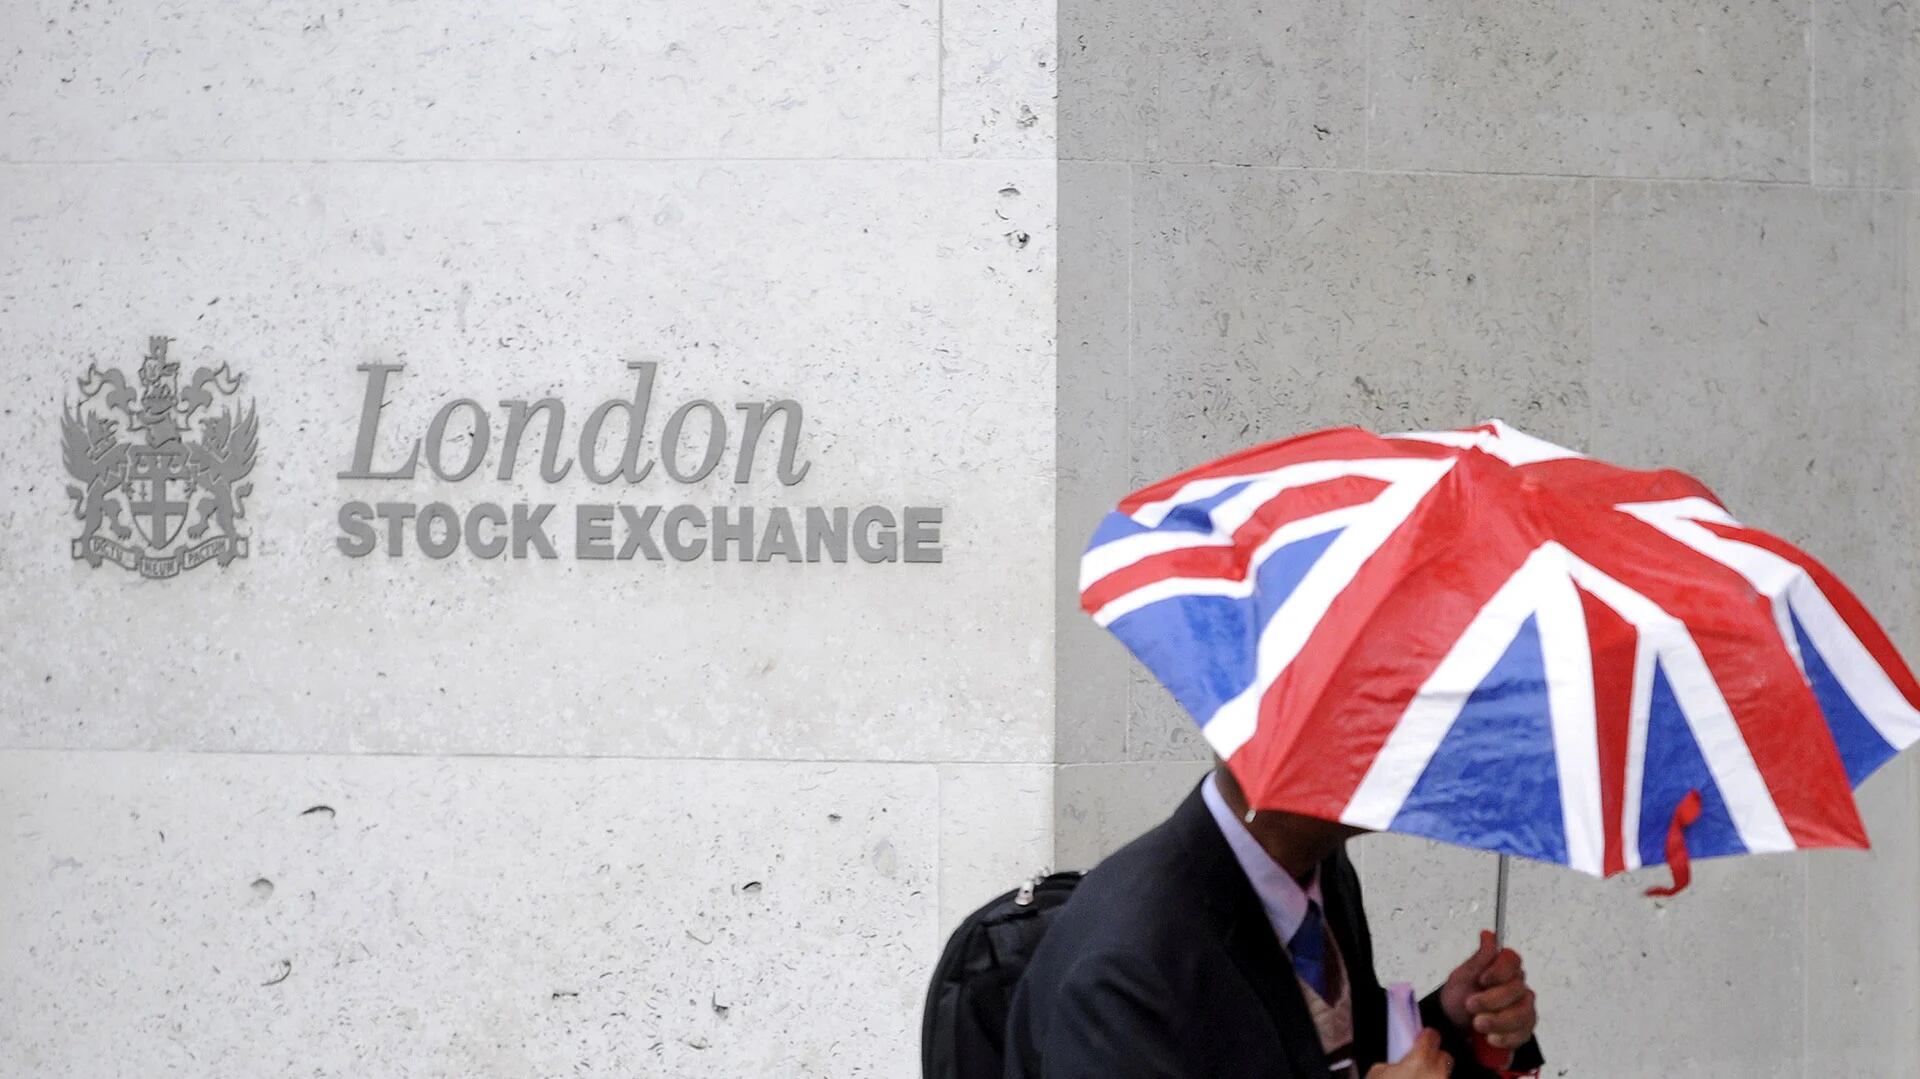 La Bolsa de Londres también comenzó a padecer las consecuencias negativas del Brexit. (Reuters)